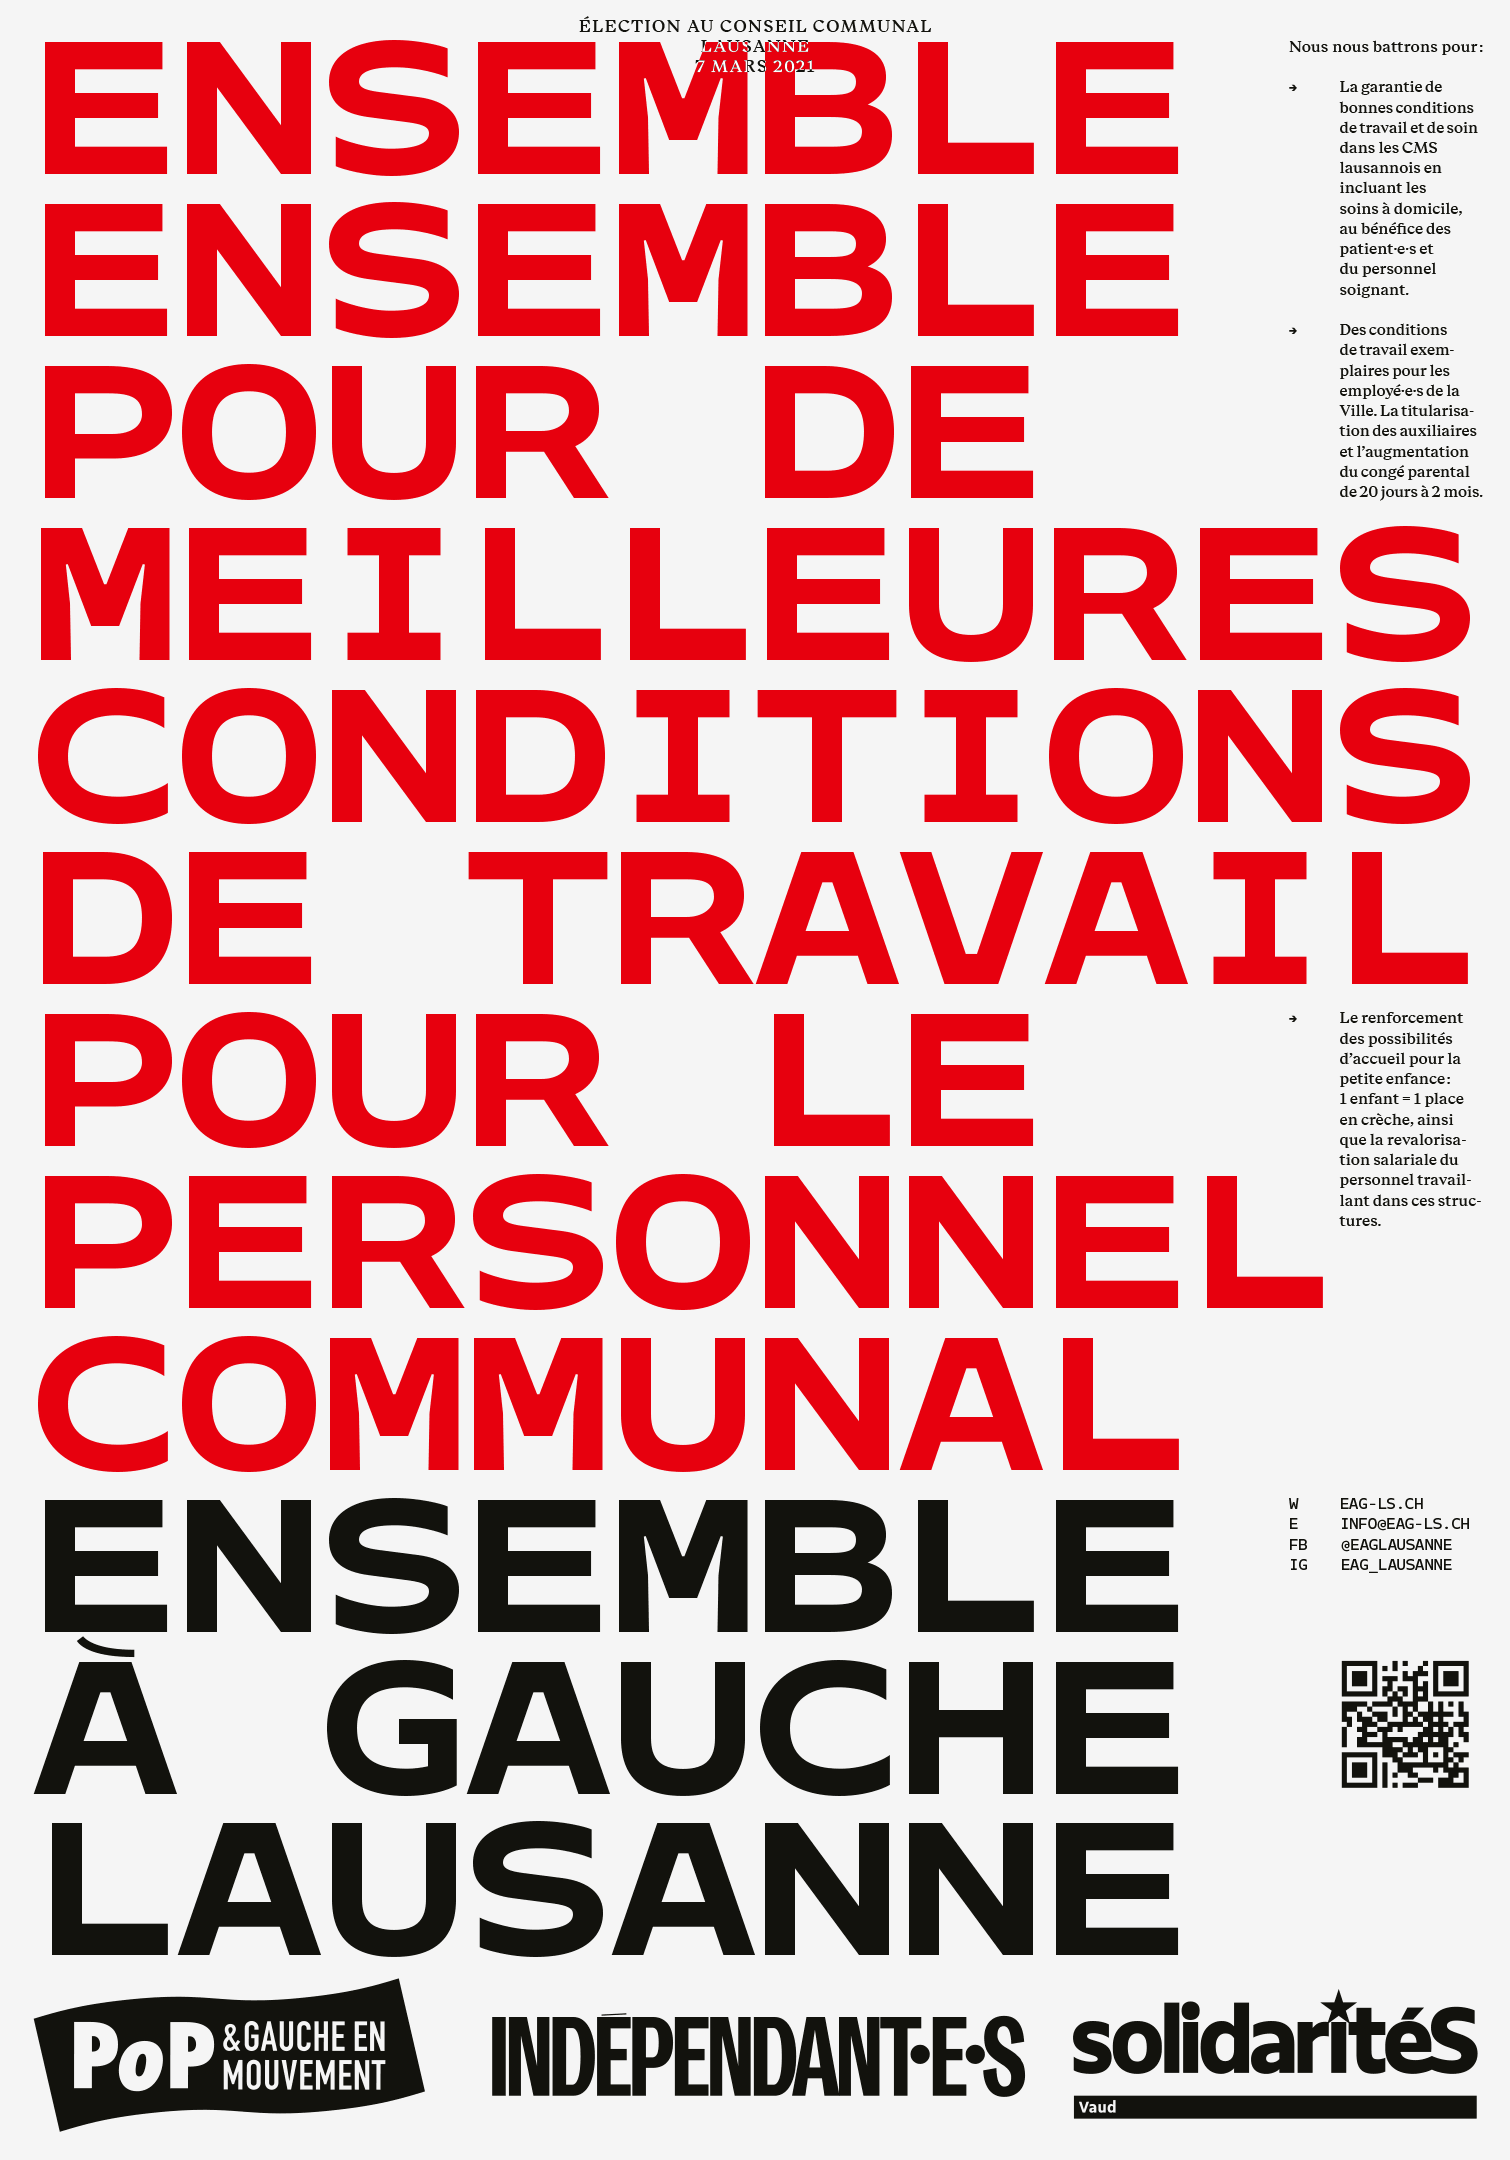 Affiche pour les élections communales 2021 à Lausanne